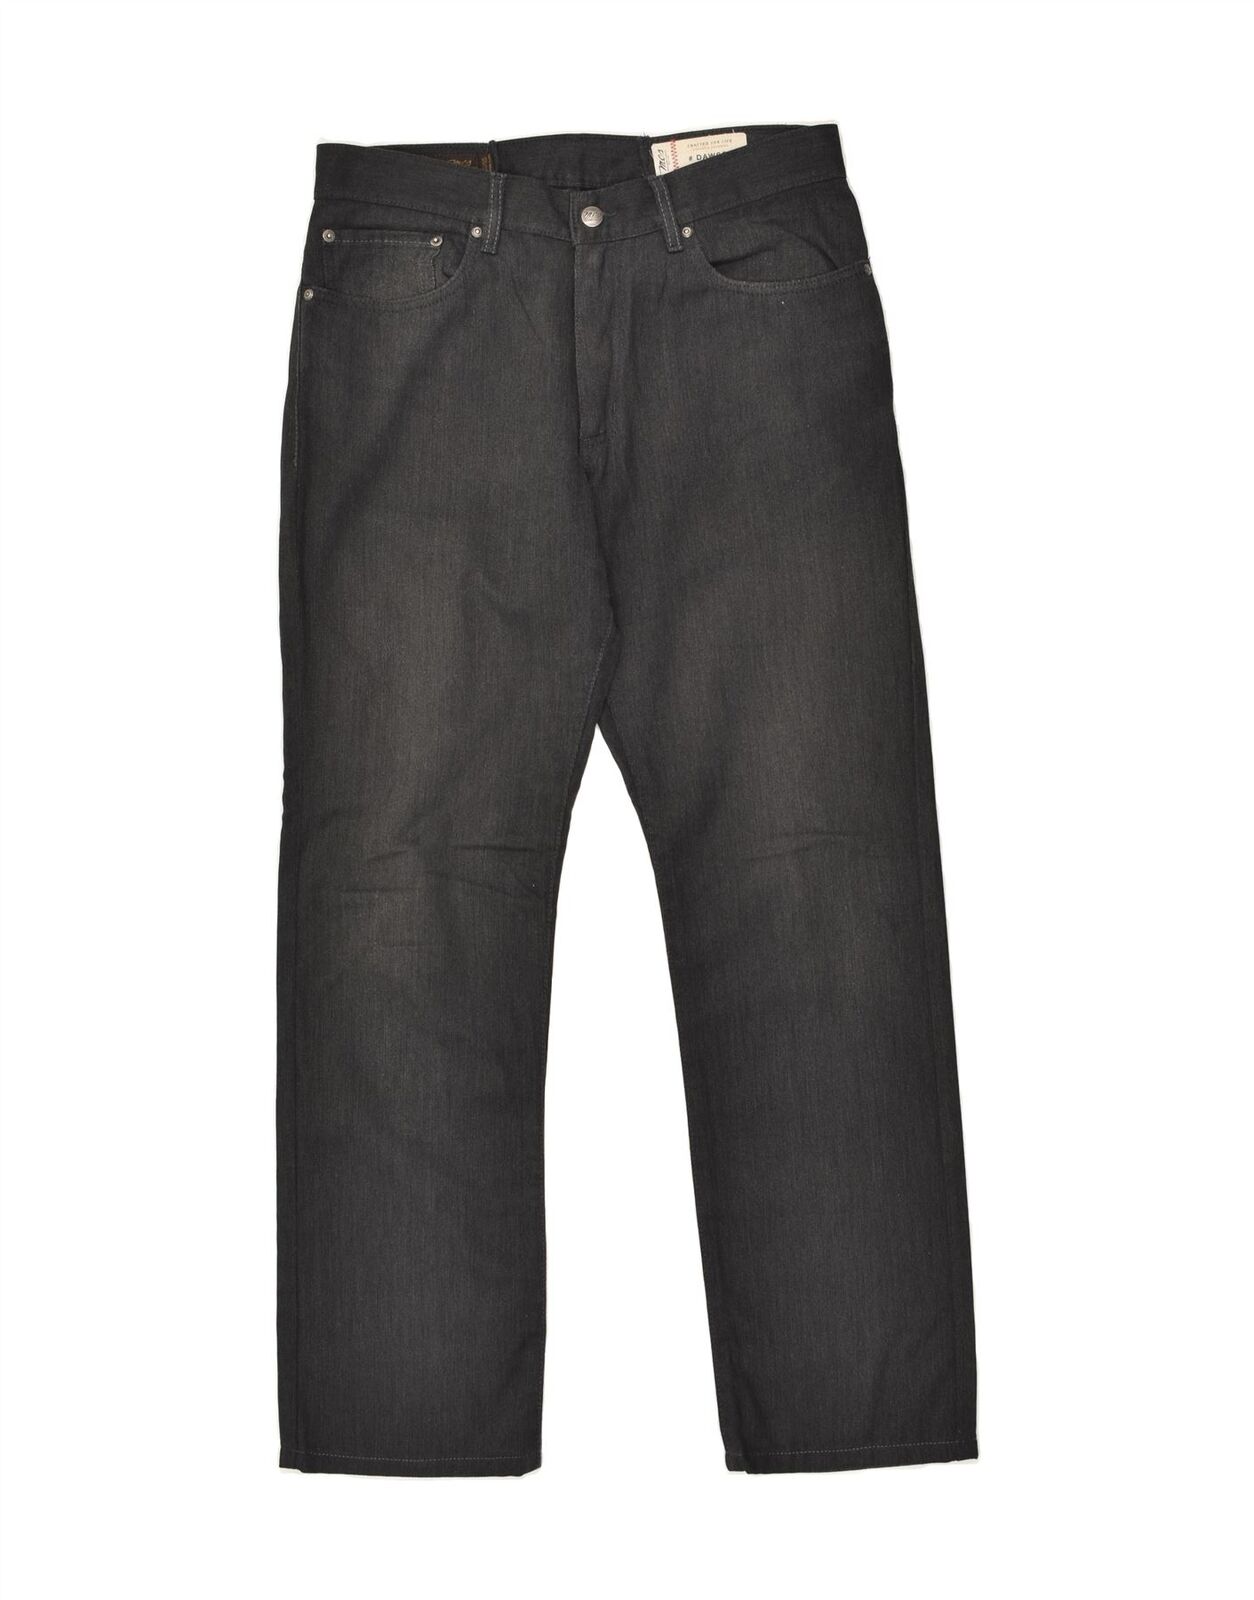 MARLBORO CLASSICS Mens Dawson Slim Jeans W34 L34 … - image 1